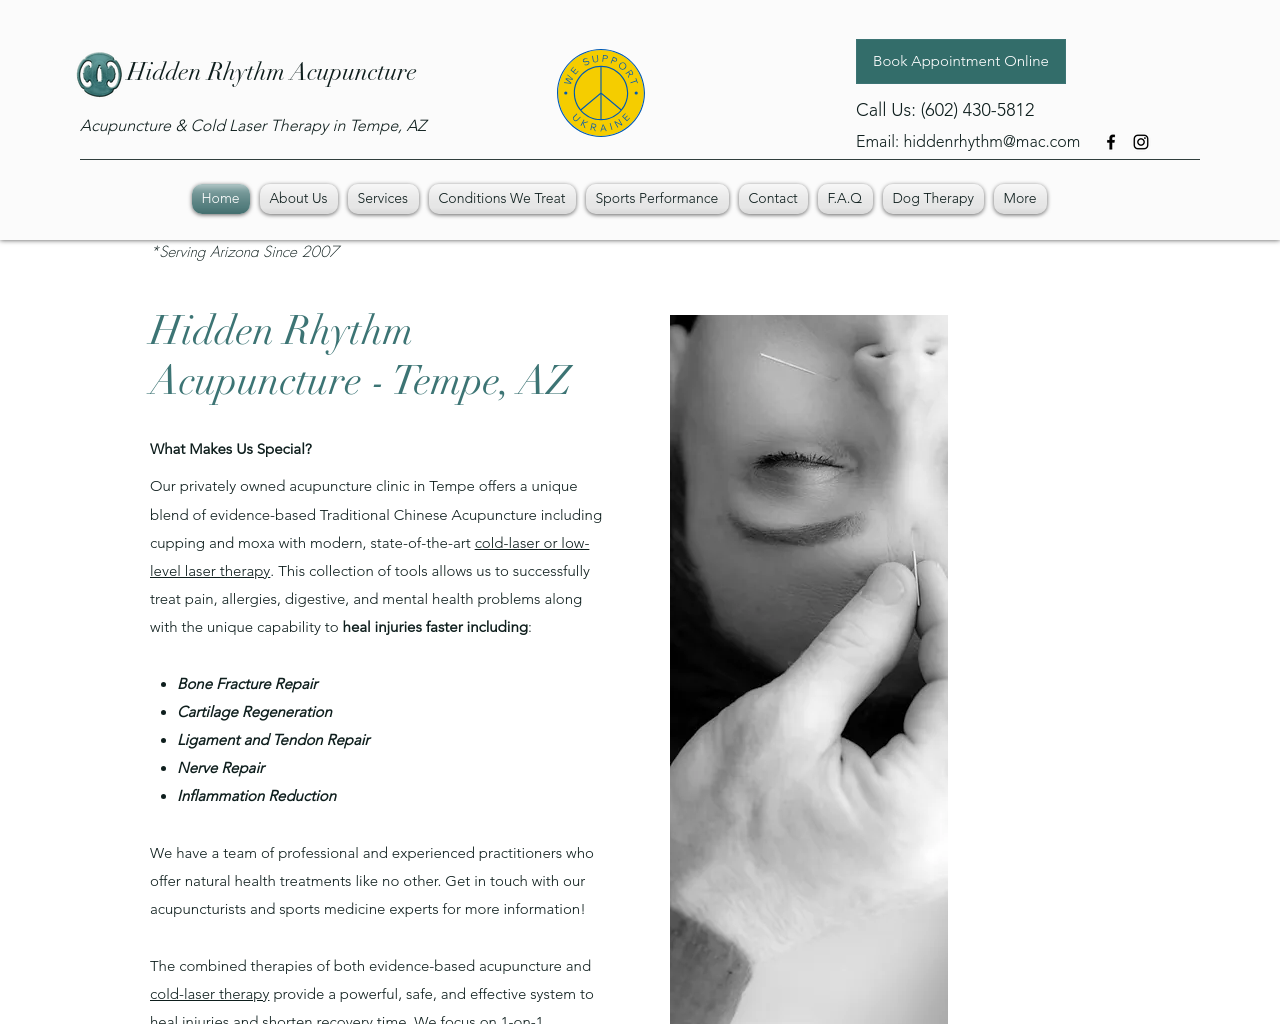 hiddenrhythmacupuncture.com